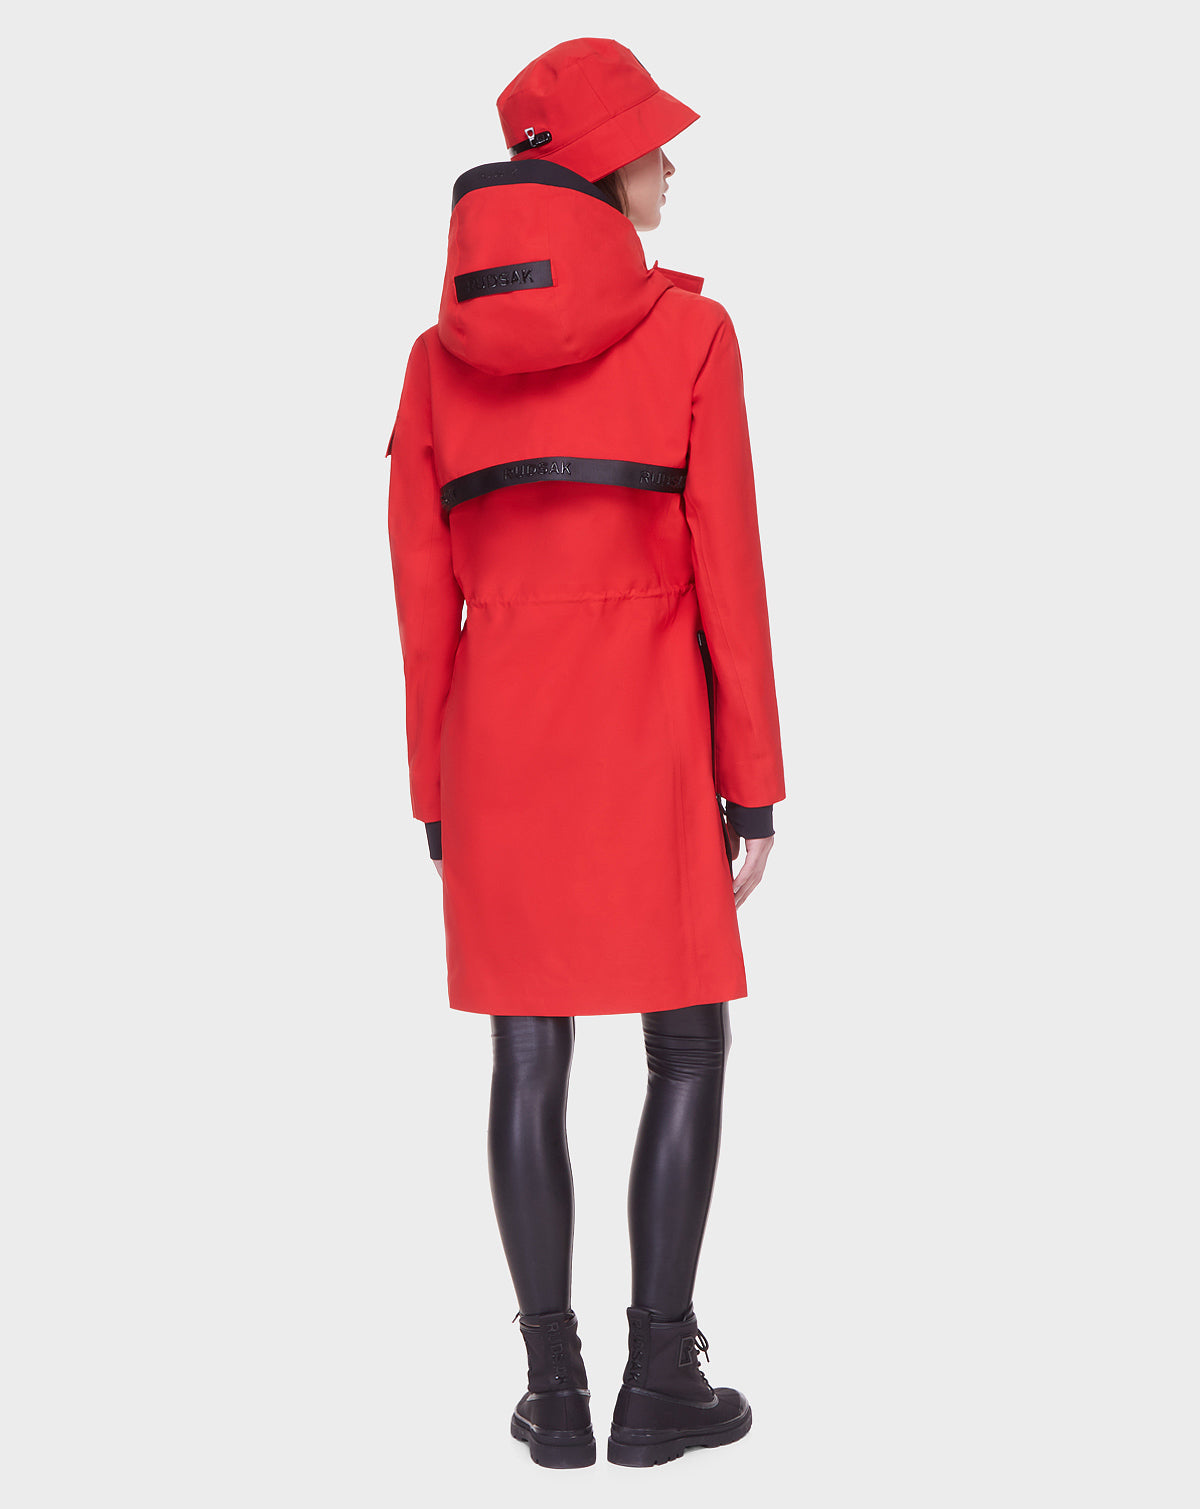 manteau rudsak rouge